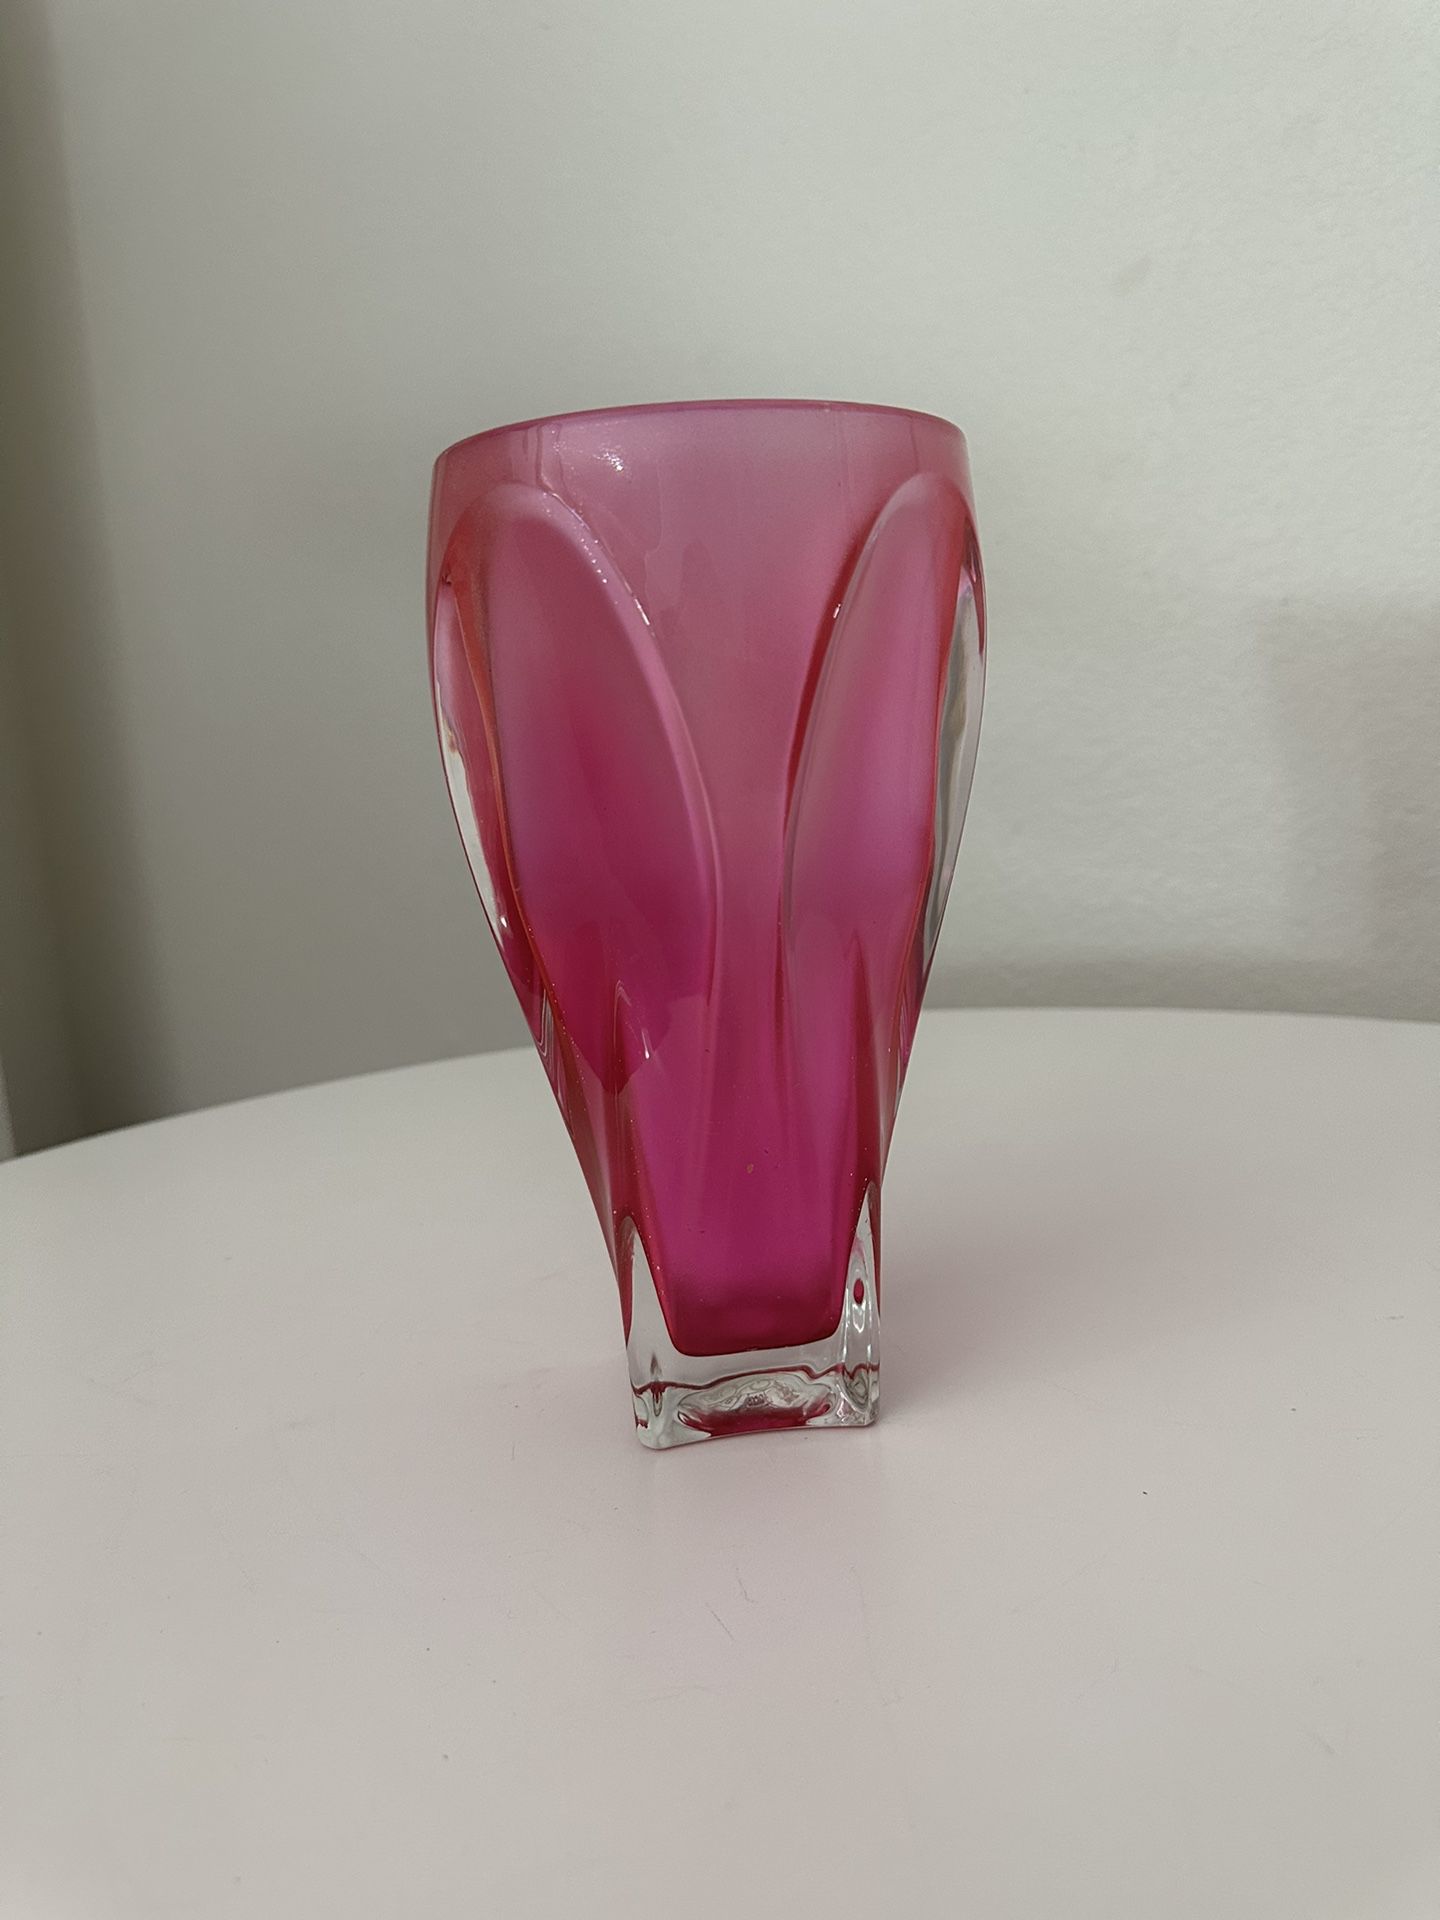 Hot Pink Glass Flower Vase